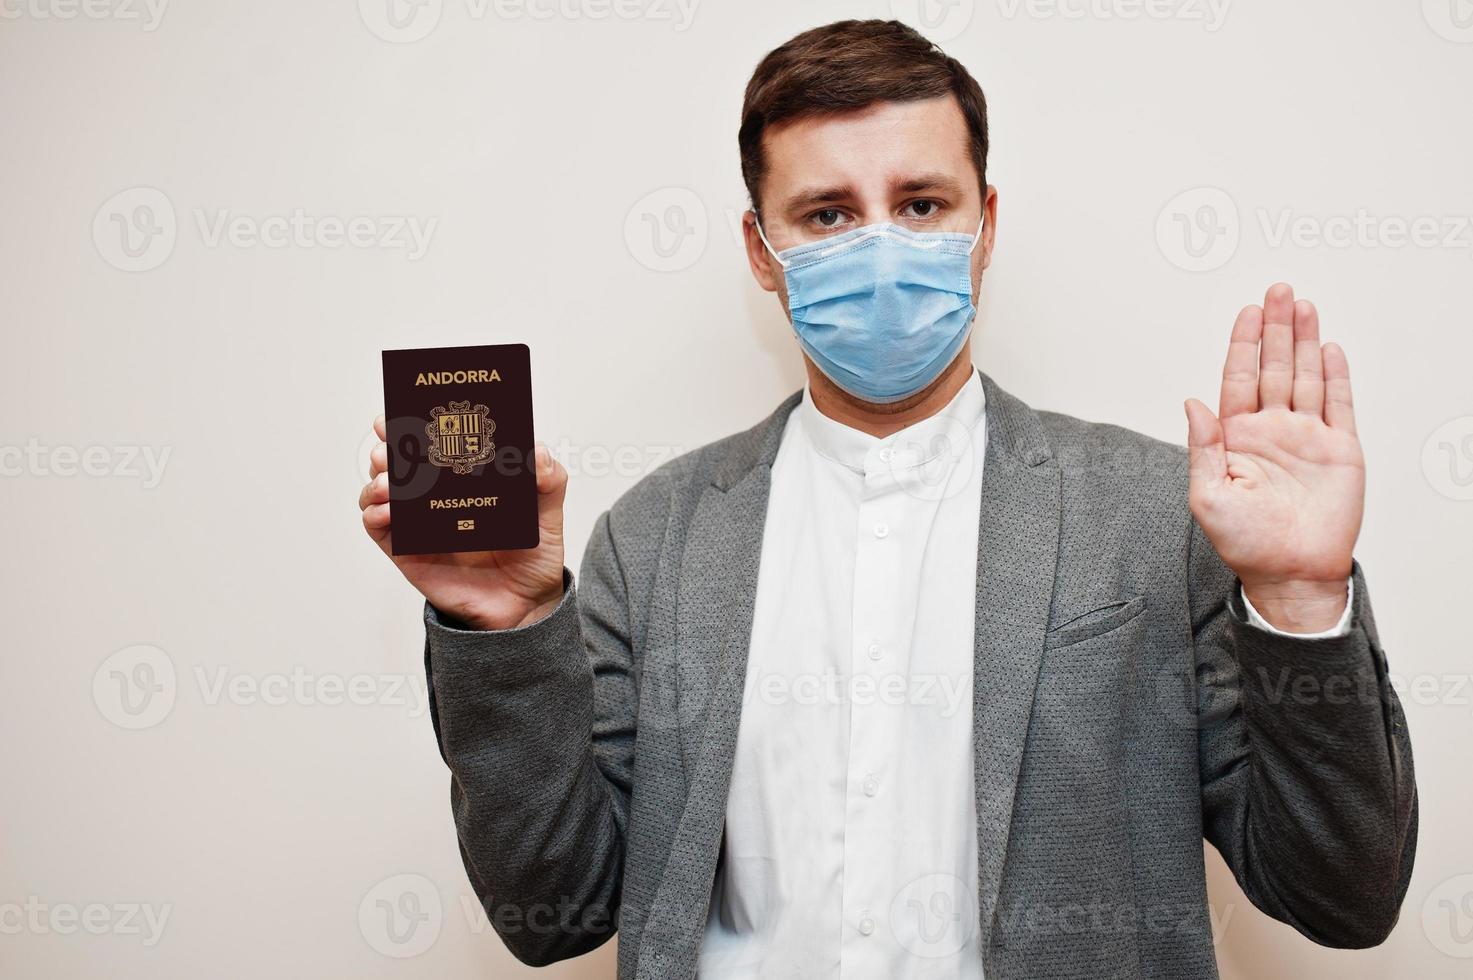 hombre europeo con ropa formal y máscara facial, muestre el pasaporte de andorra con la mano de la señal de stop. bloqueo de coronavirus en el concepto de país de europa. foto